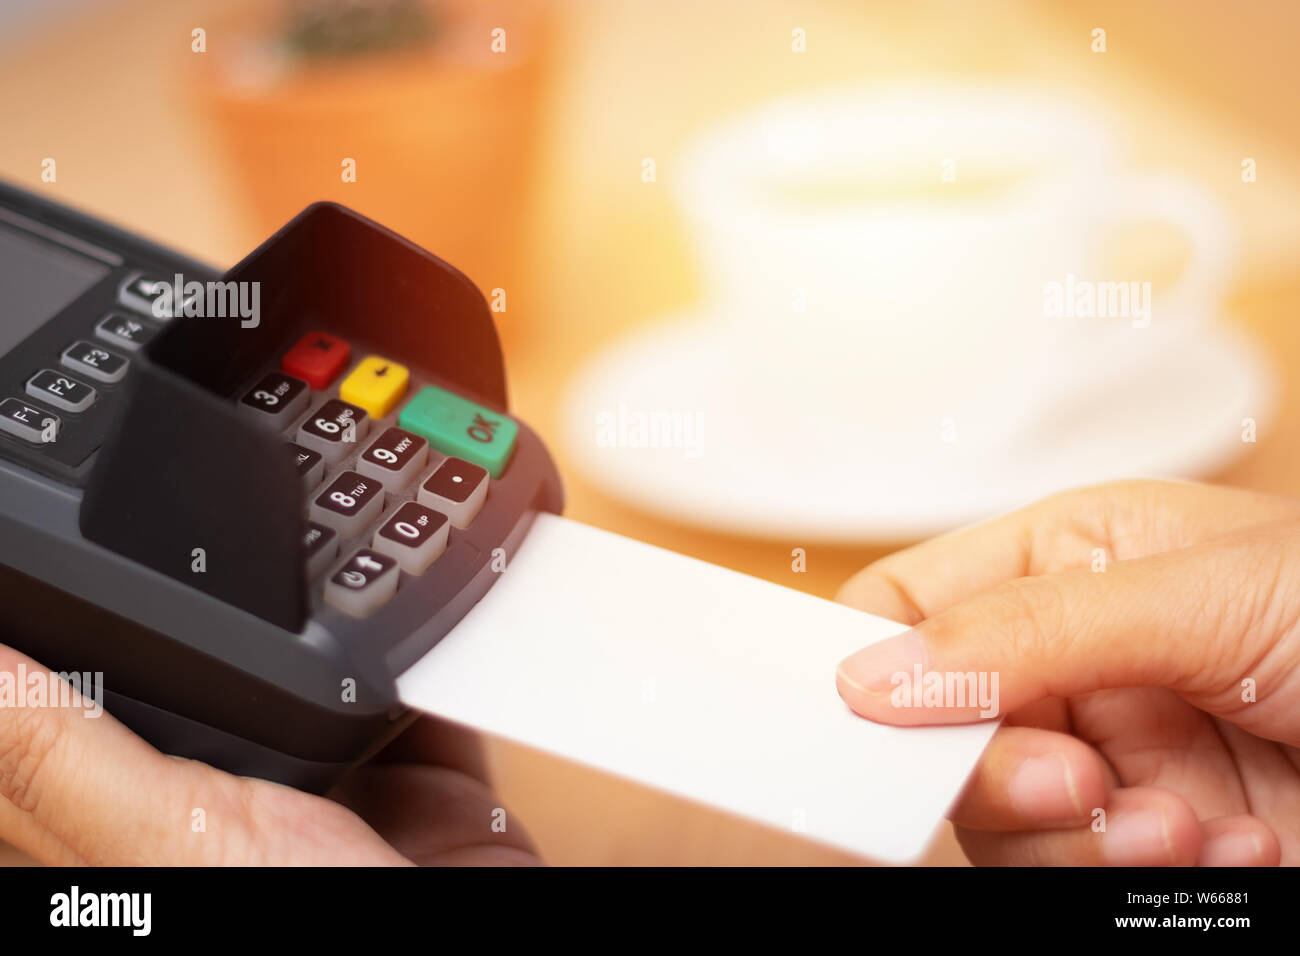 Concepto de pago con tarjeta de crédito. close-up mano insertar tarjeta de crédito ficticia con tarjeta en blanco blanco con una máquina de lectura de tarjeta en el terminal de punto de venta en el COF. Foto de stock